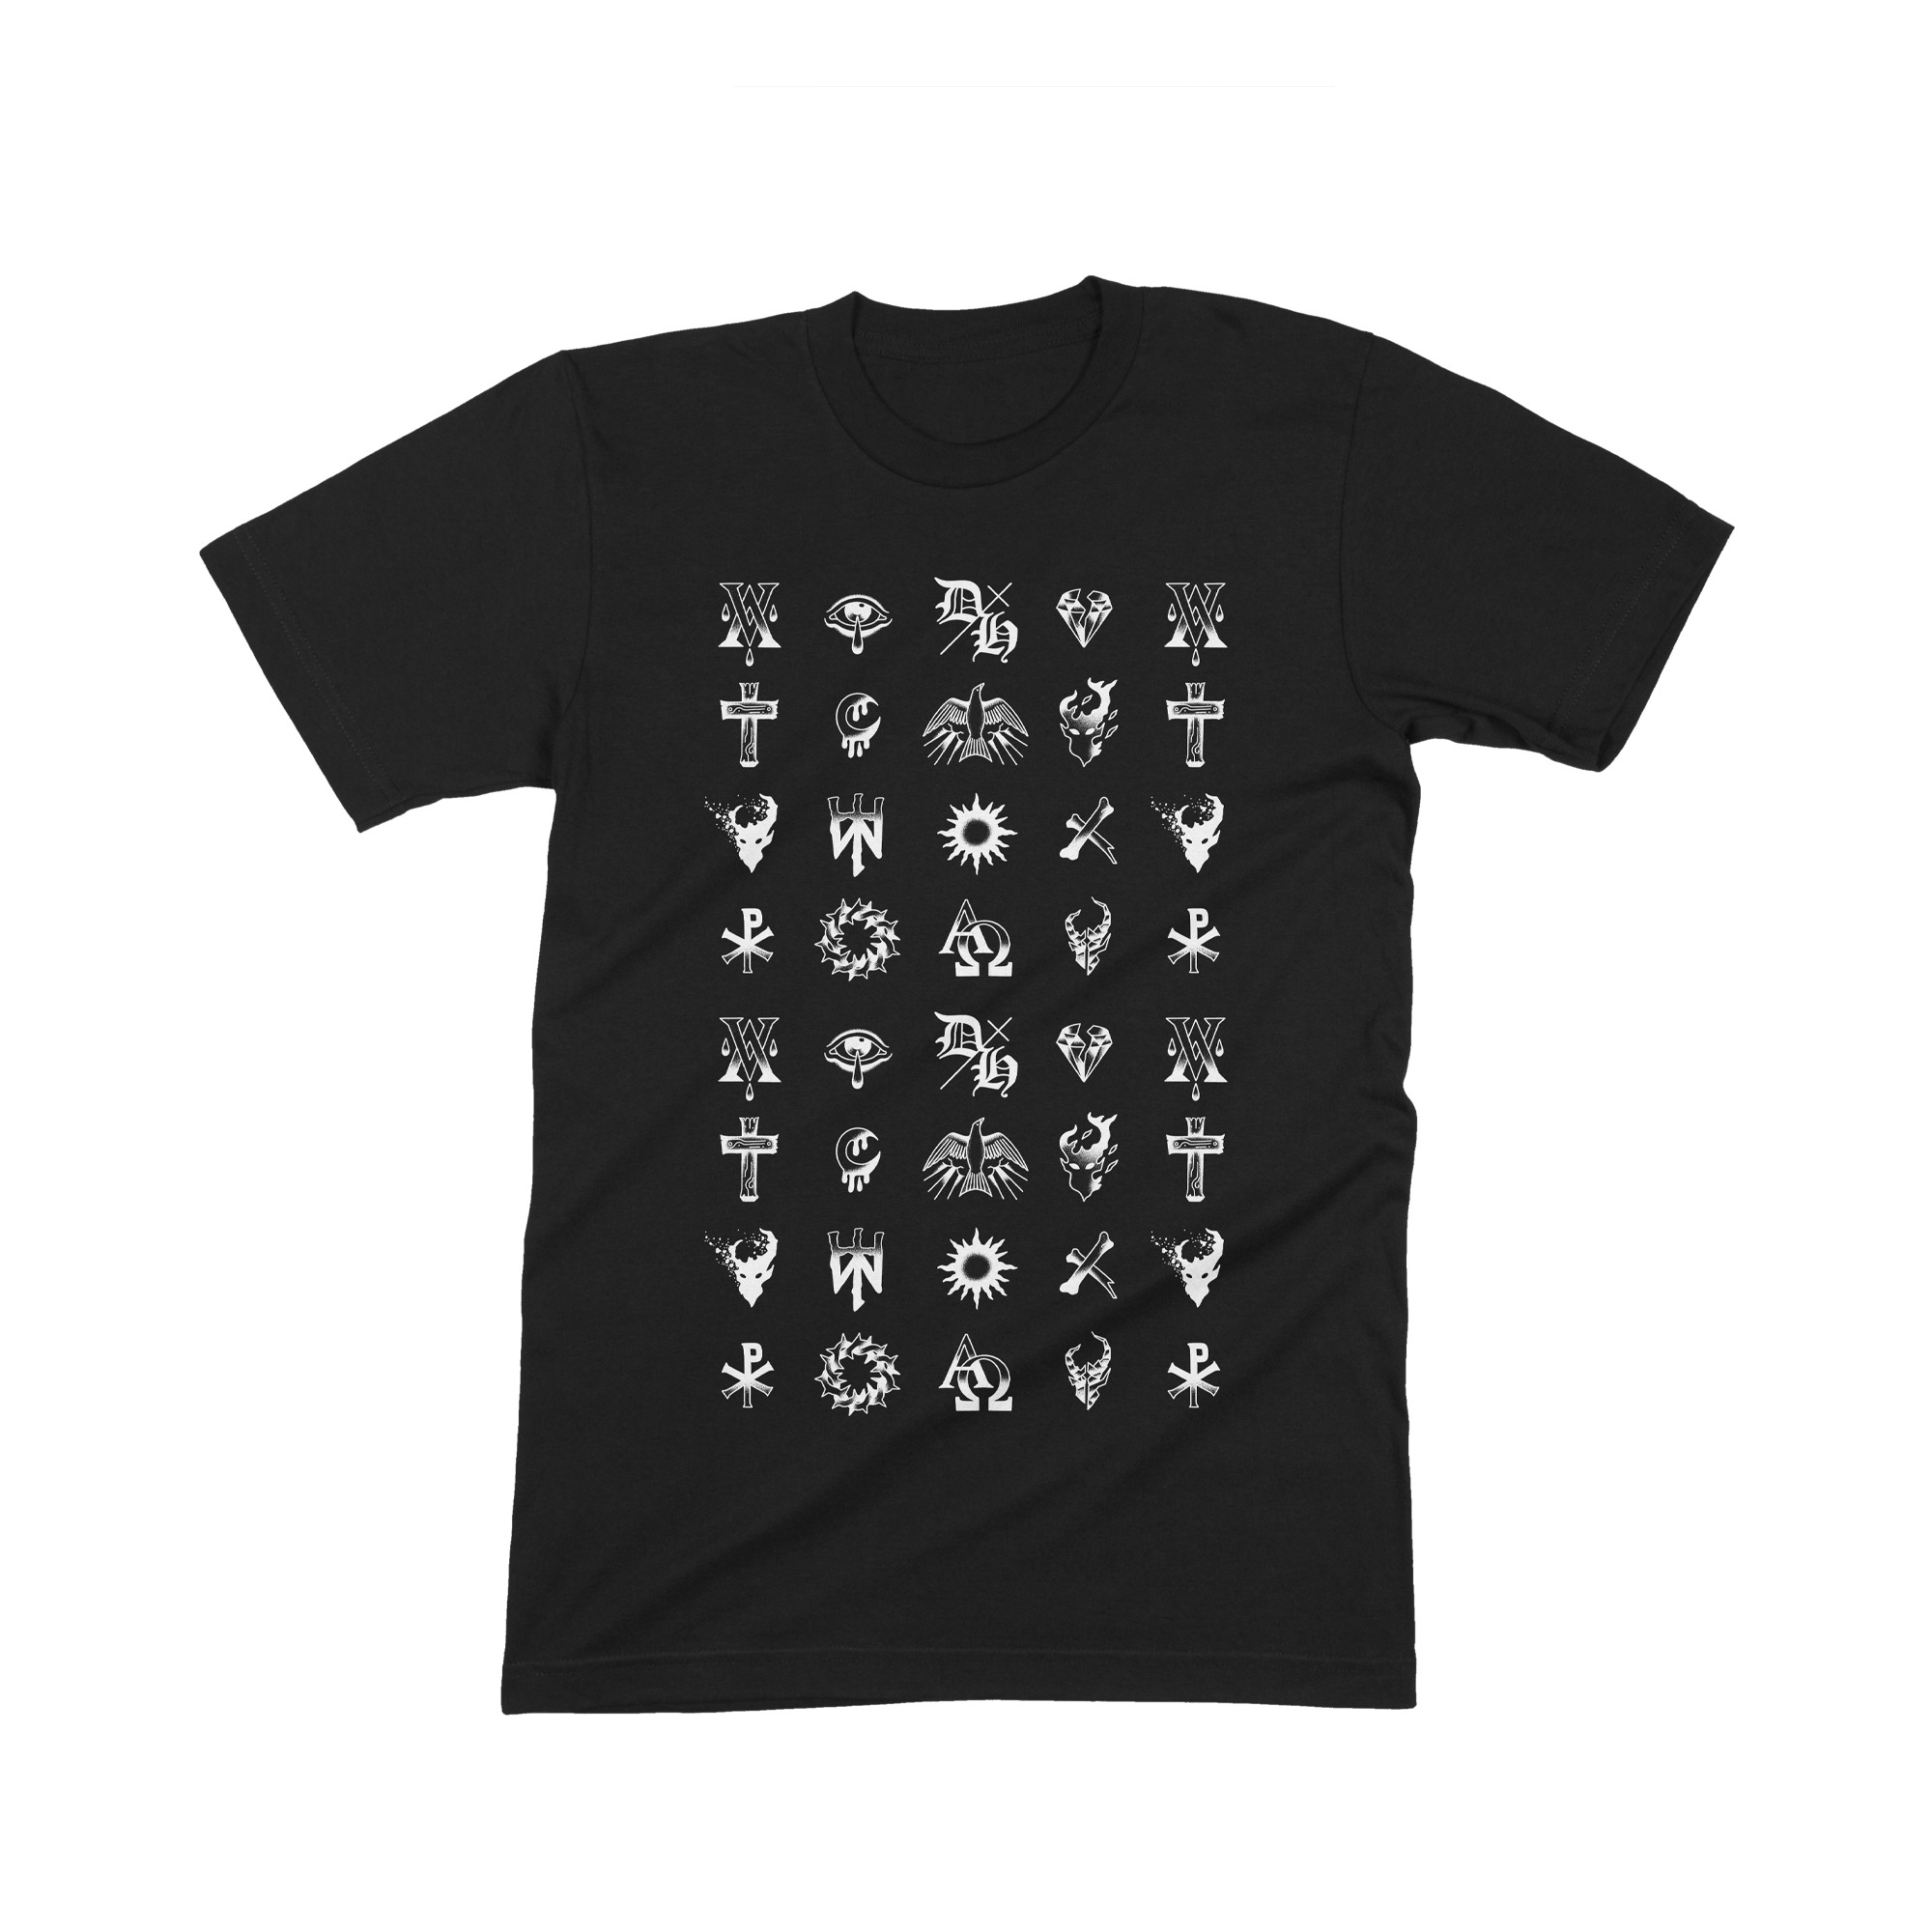 Symbols T-Shirt